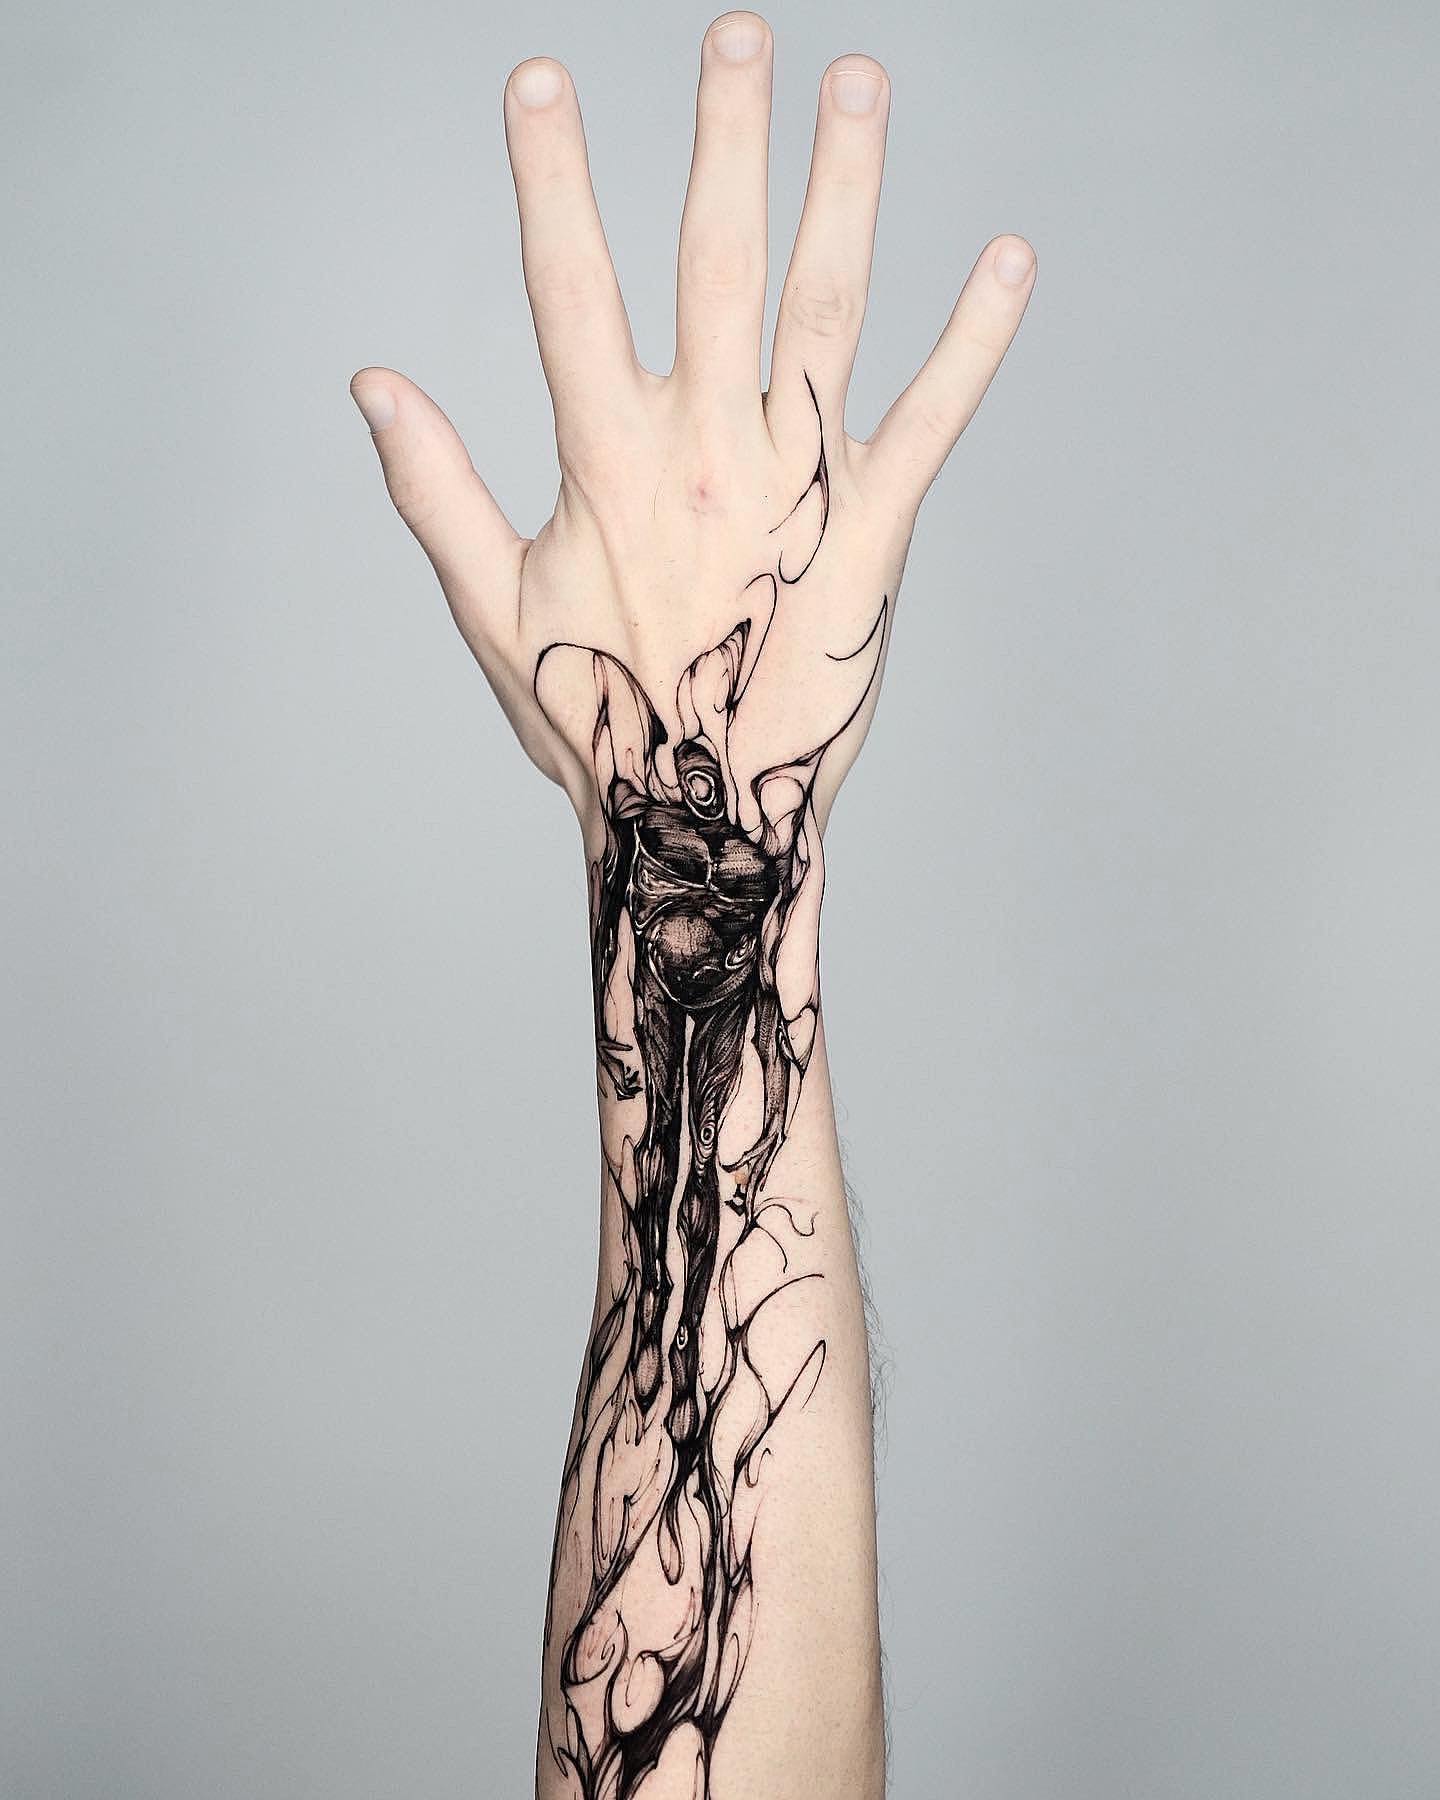 Wrist Tattoos - Beautiful Wrist Tattoo Ideas From Instagram